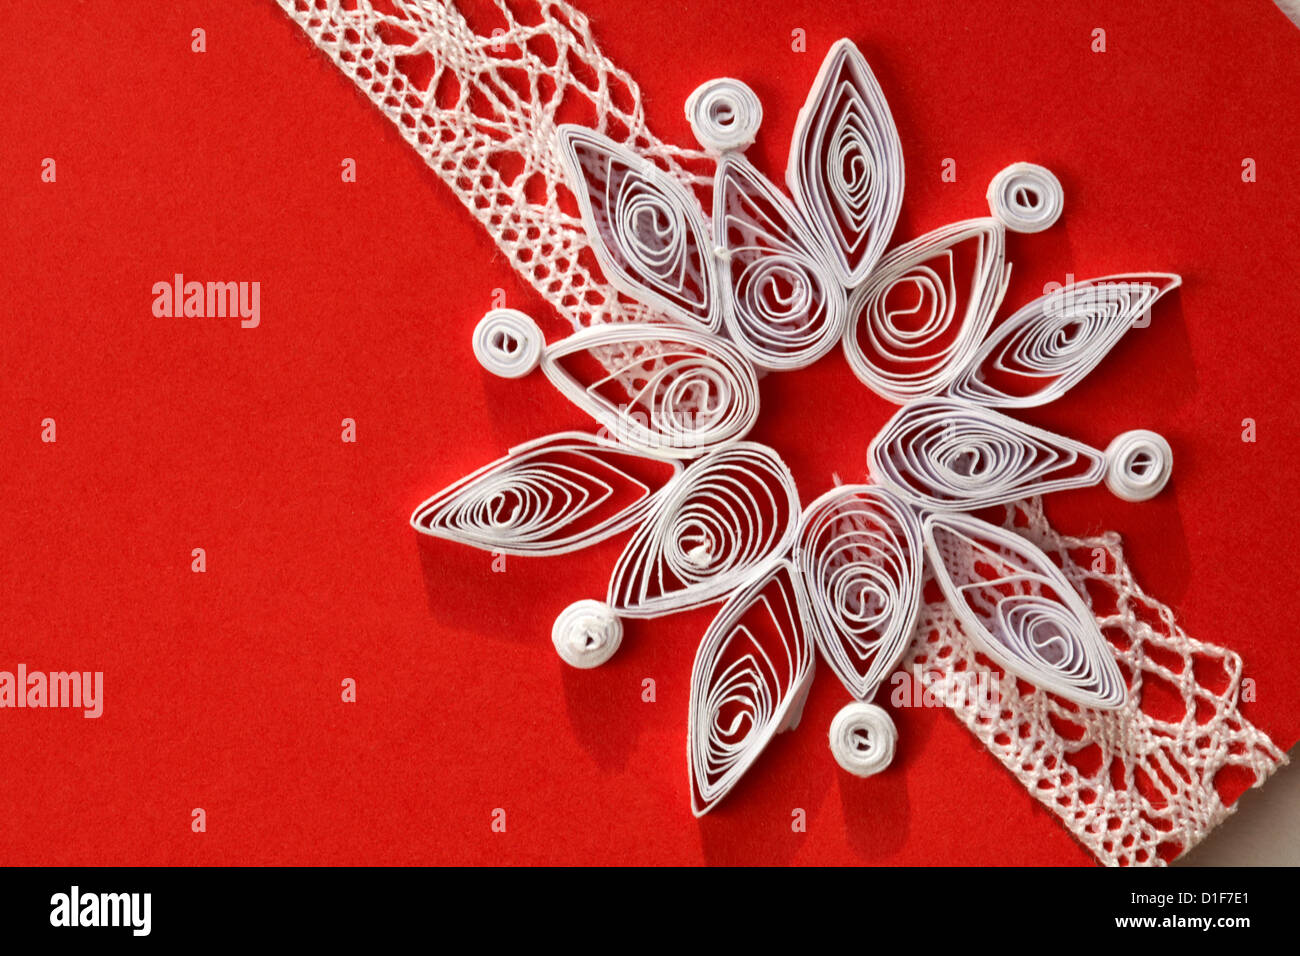 Immagini Quilling Natale.Dettaglio Di Carta Quilling Su Artigianale Scheda Di Natale Foto Stock Alamy